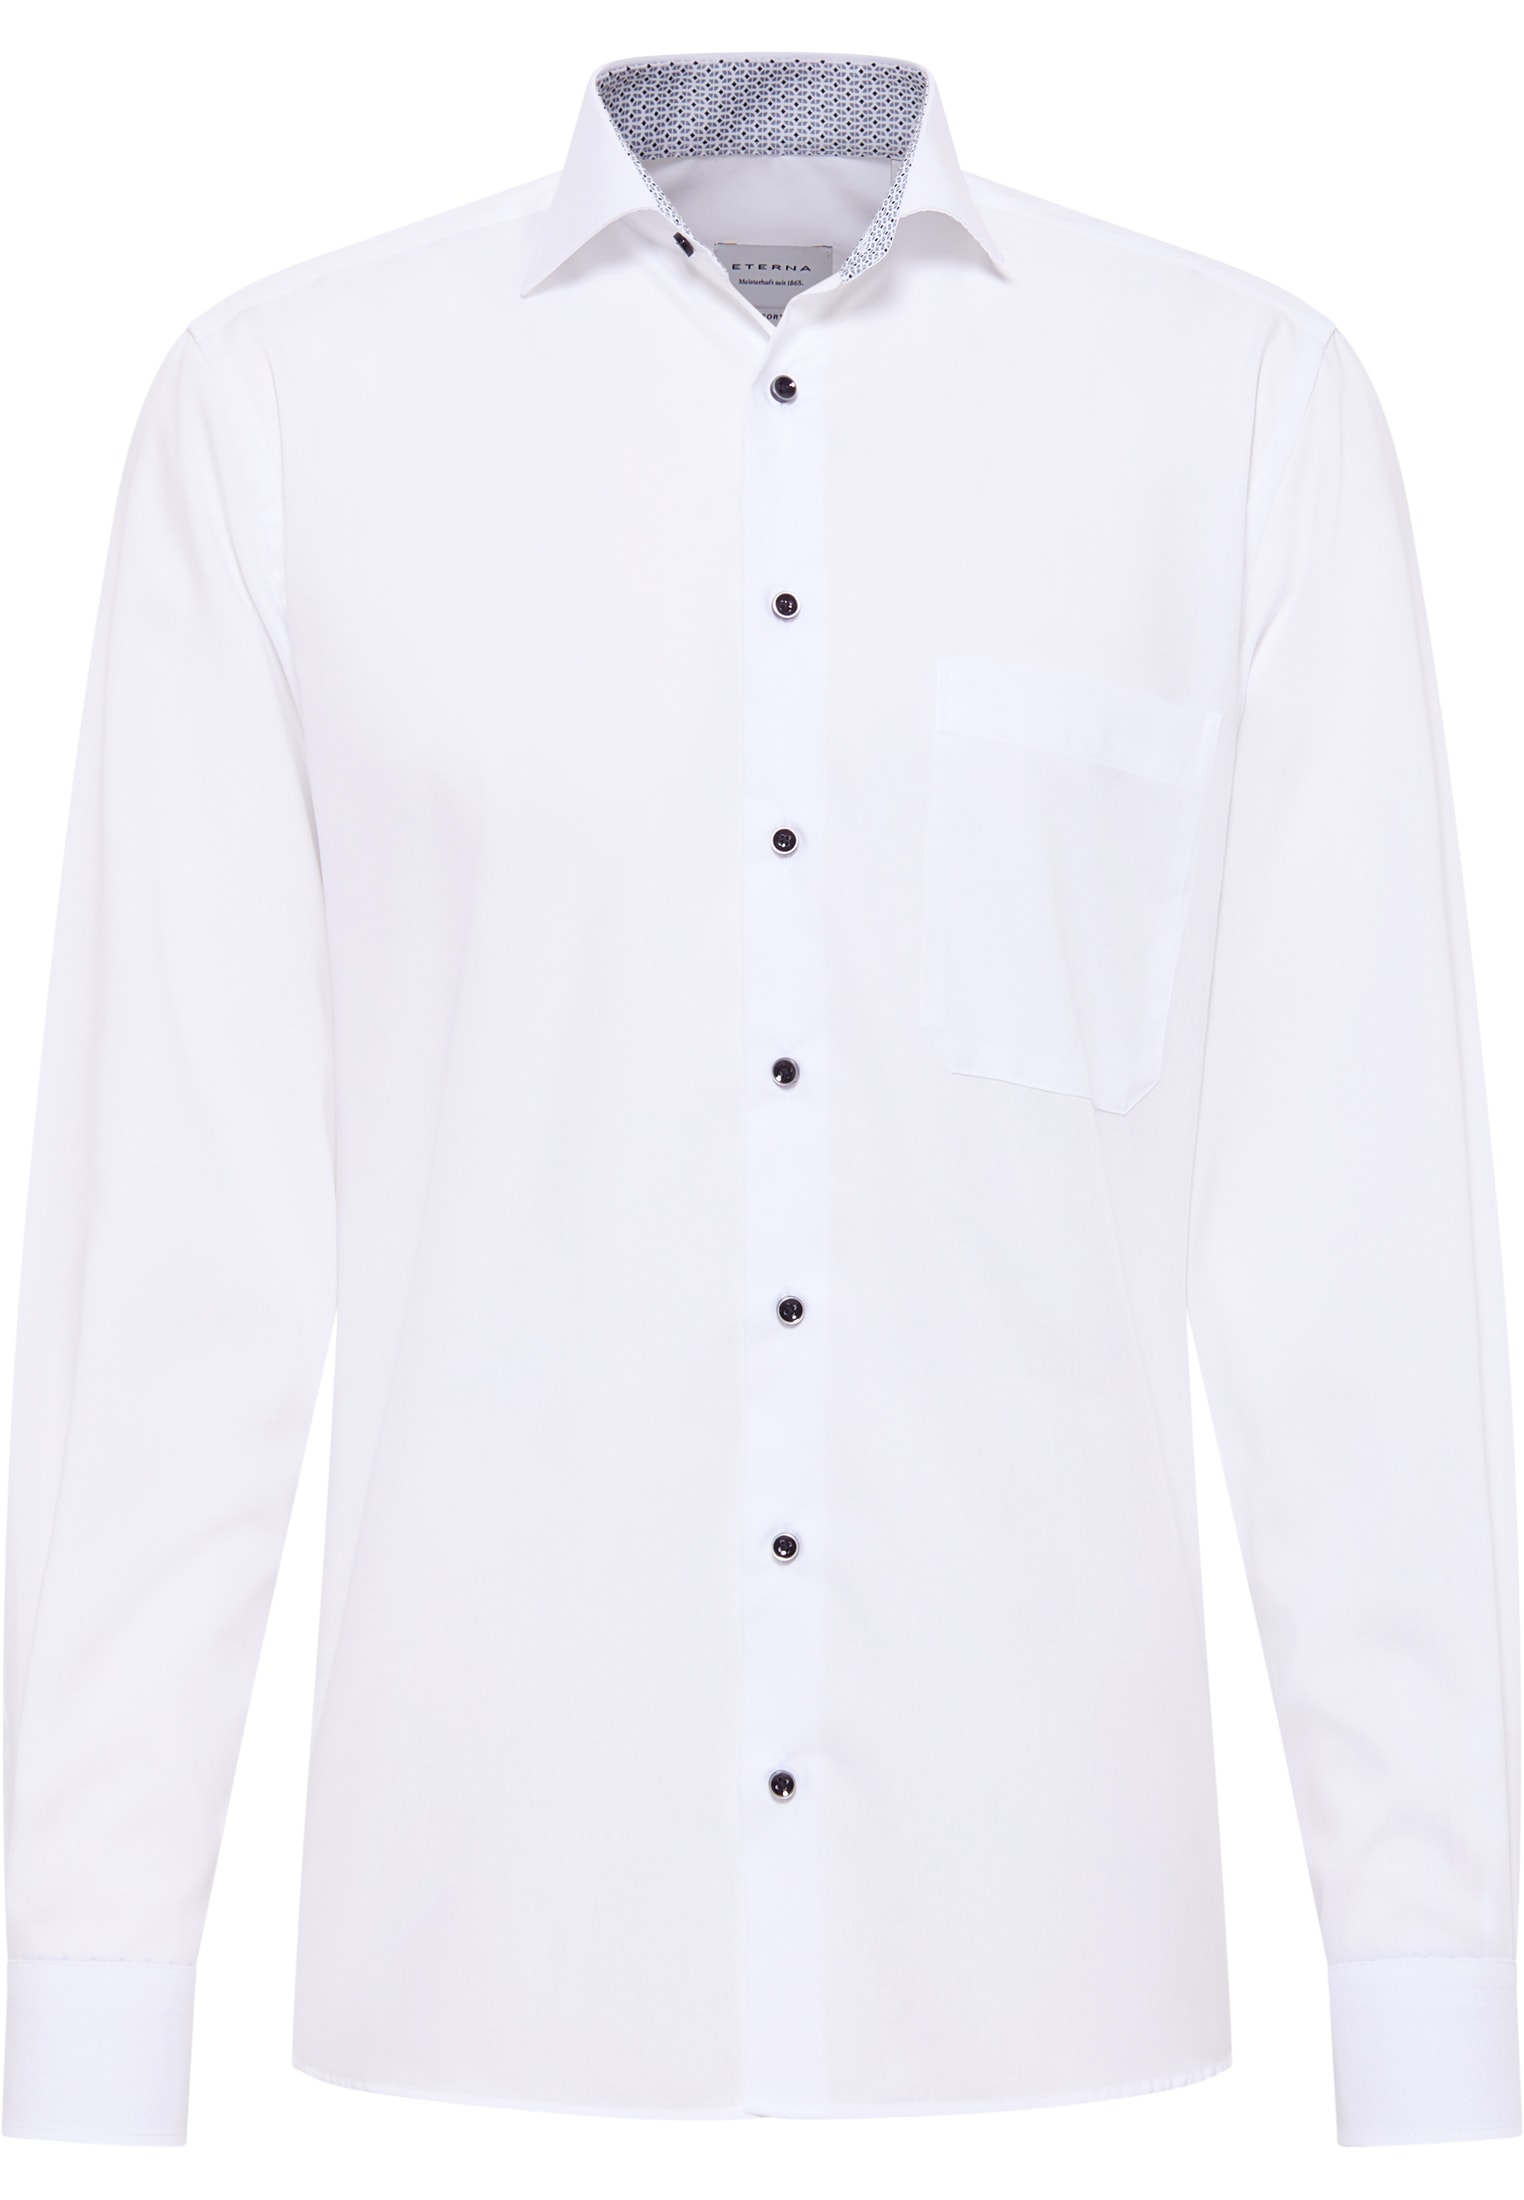 | Shirt weiß 44 | verkürzter Original in | (59 | cm) COMFORT FIT weiß unifarben 1SH12862-00-01-44-59 Arm